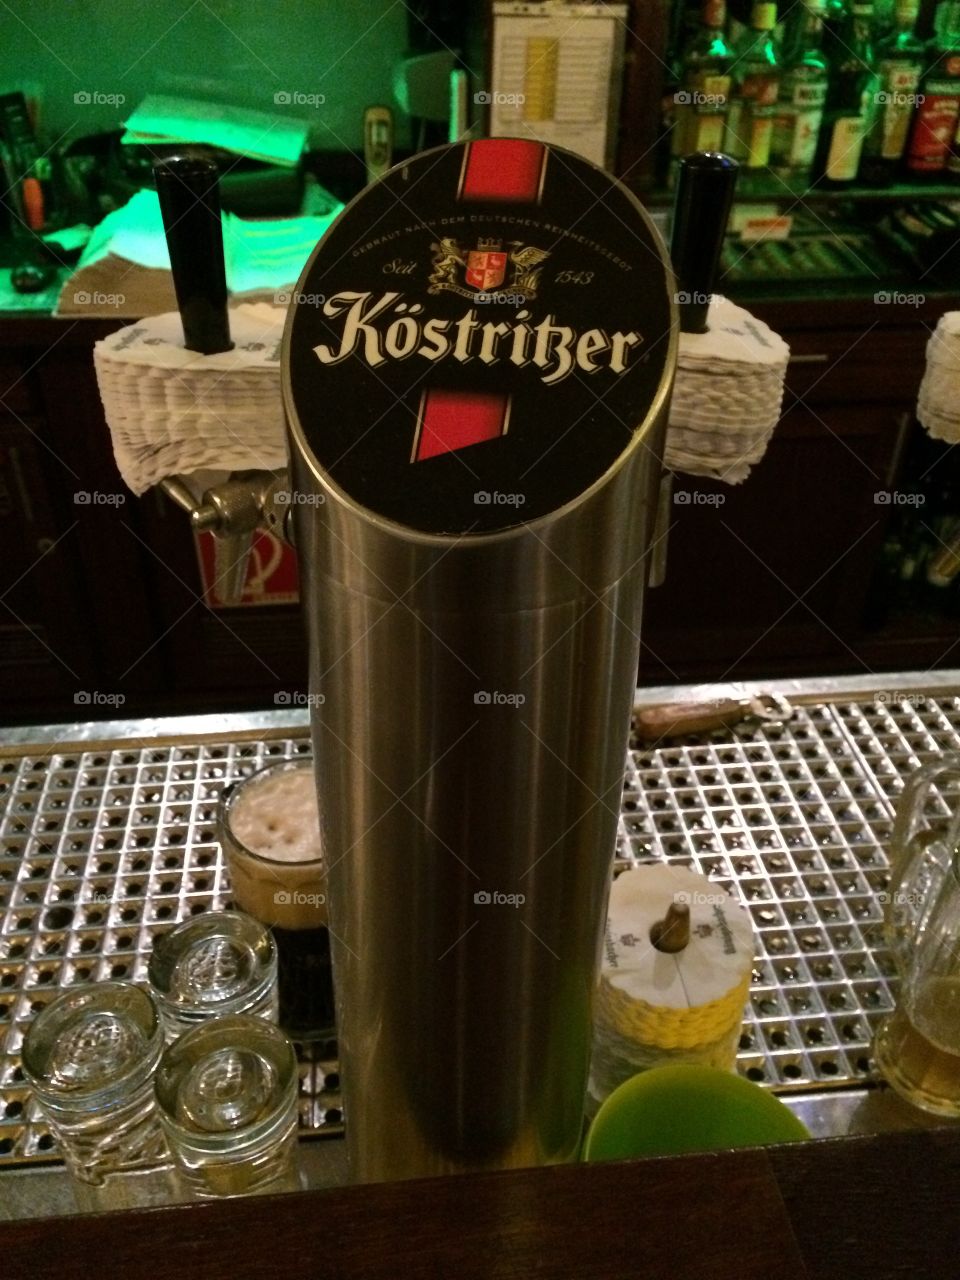 German beer tap